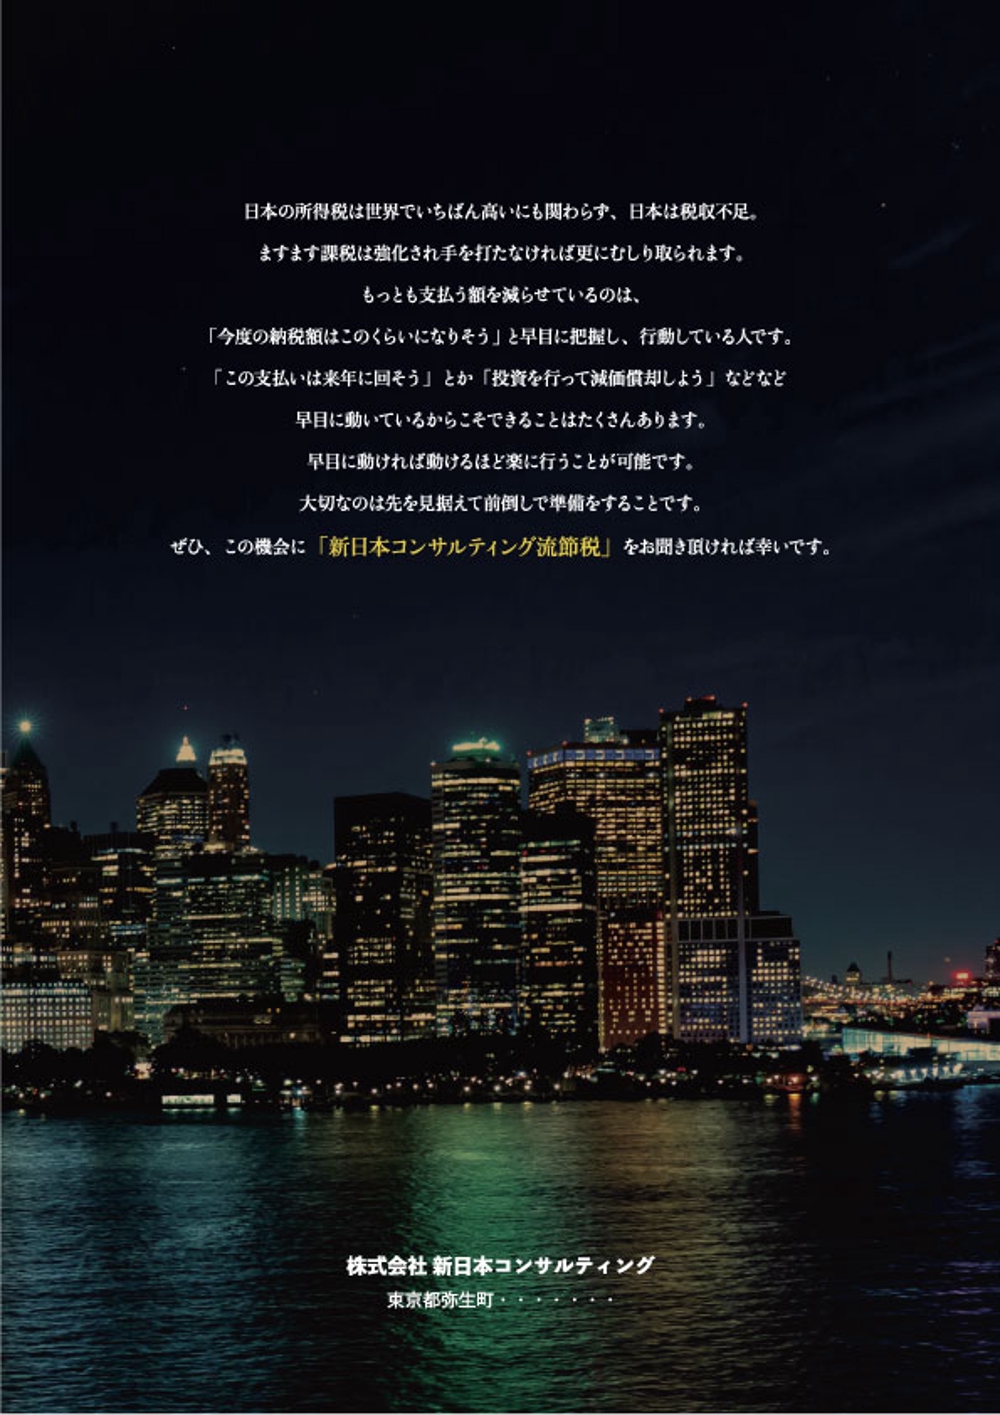 不動産会社「㈱新日本コンサルティング」の節税パンフレット